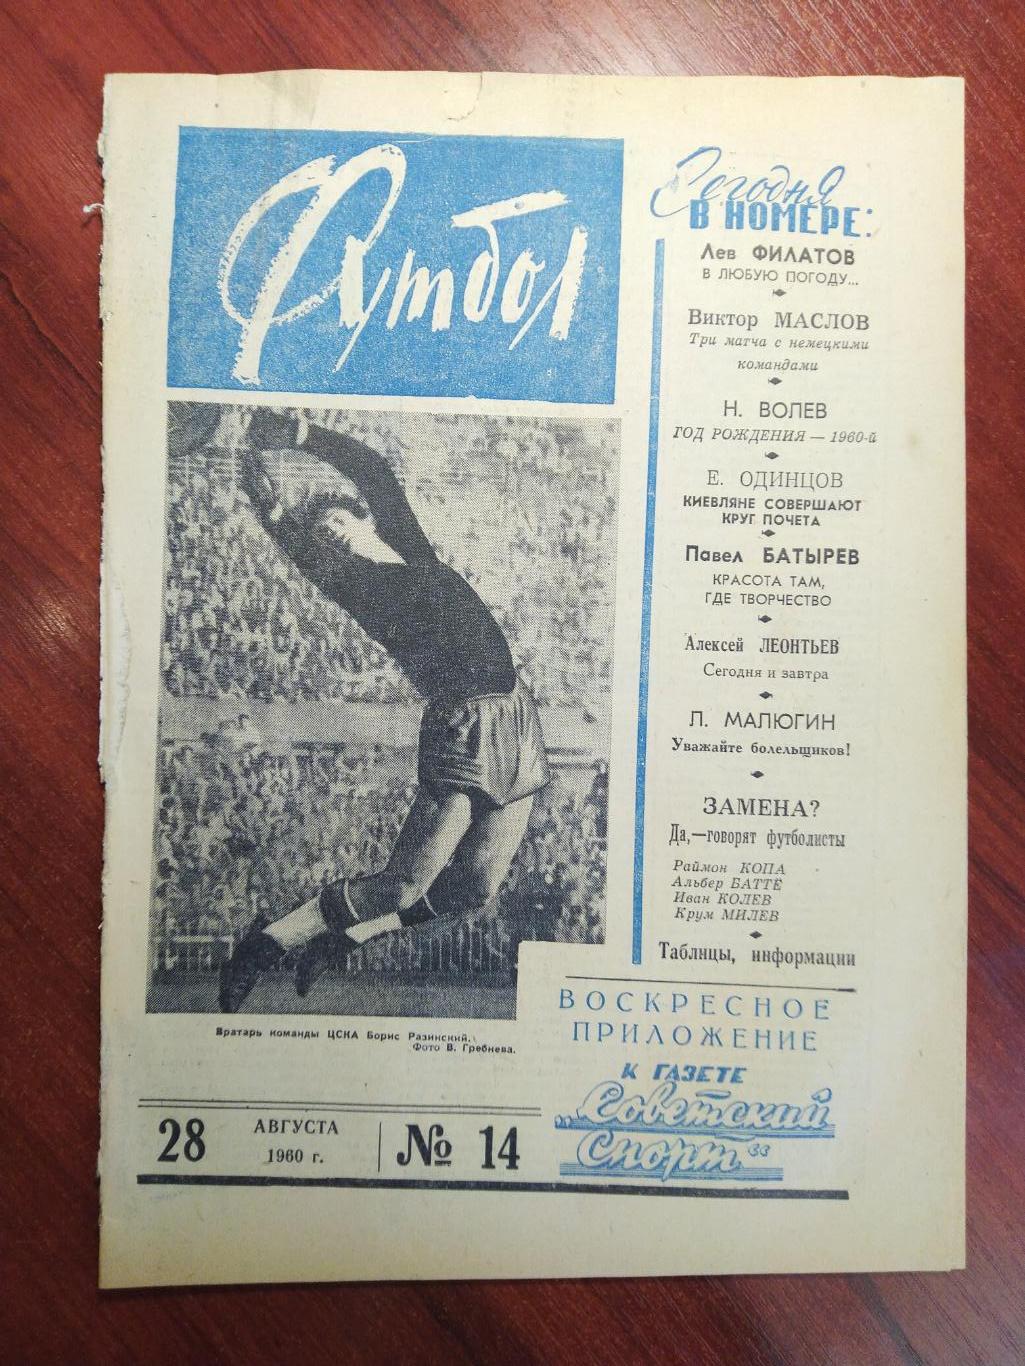 Еженедельник Футбол №14 от 28 августа 1960.Первый год выпуска!